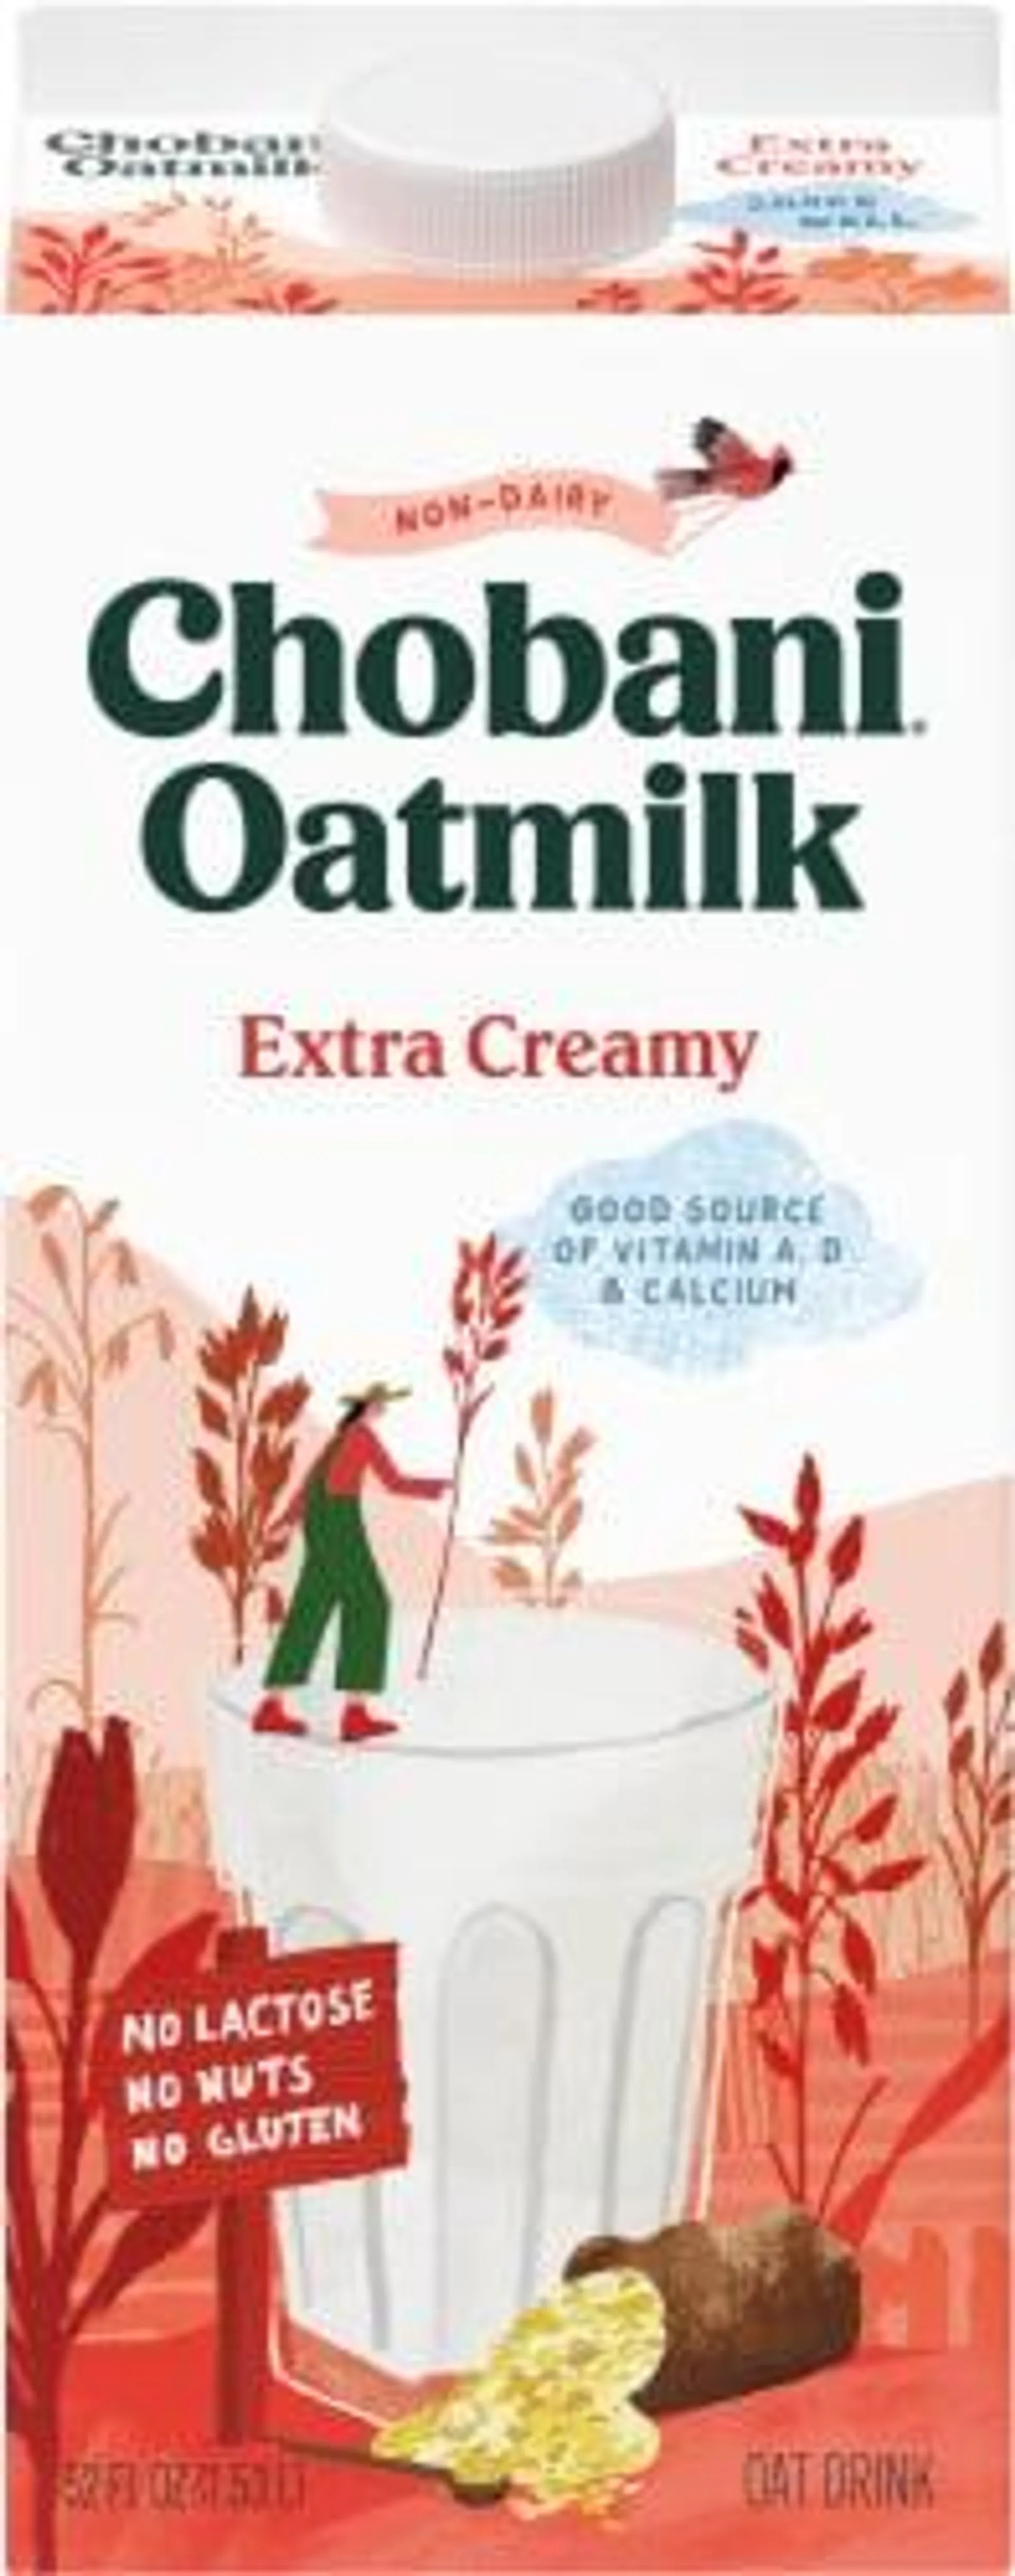 Chobani® Extra Creamy Oatmilk